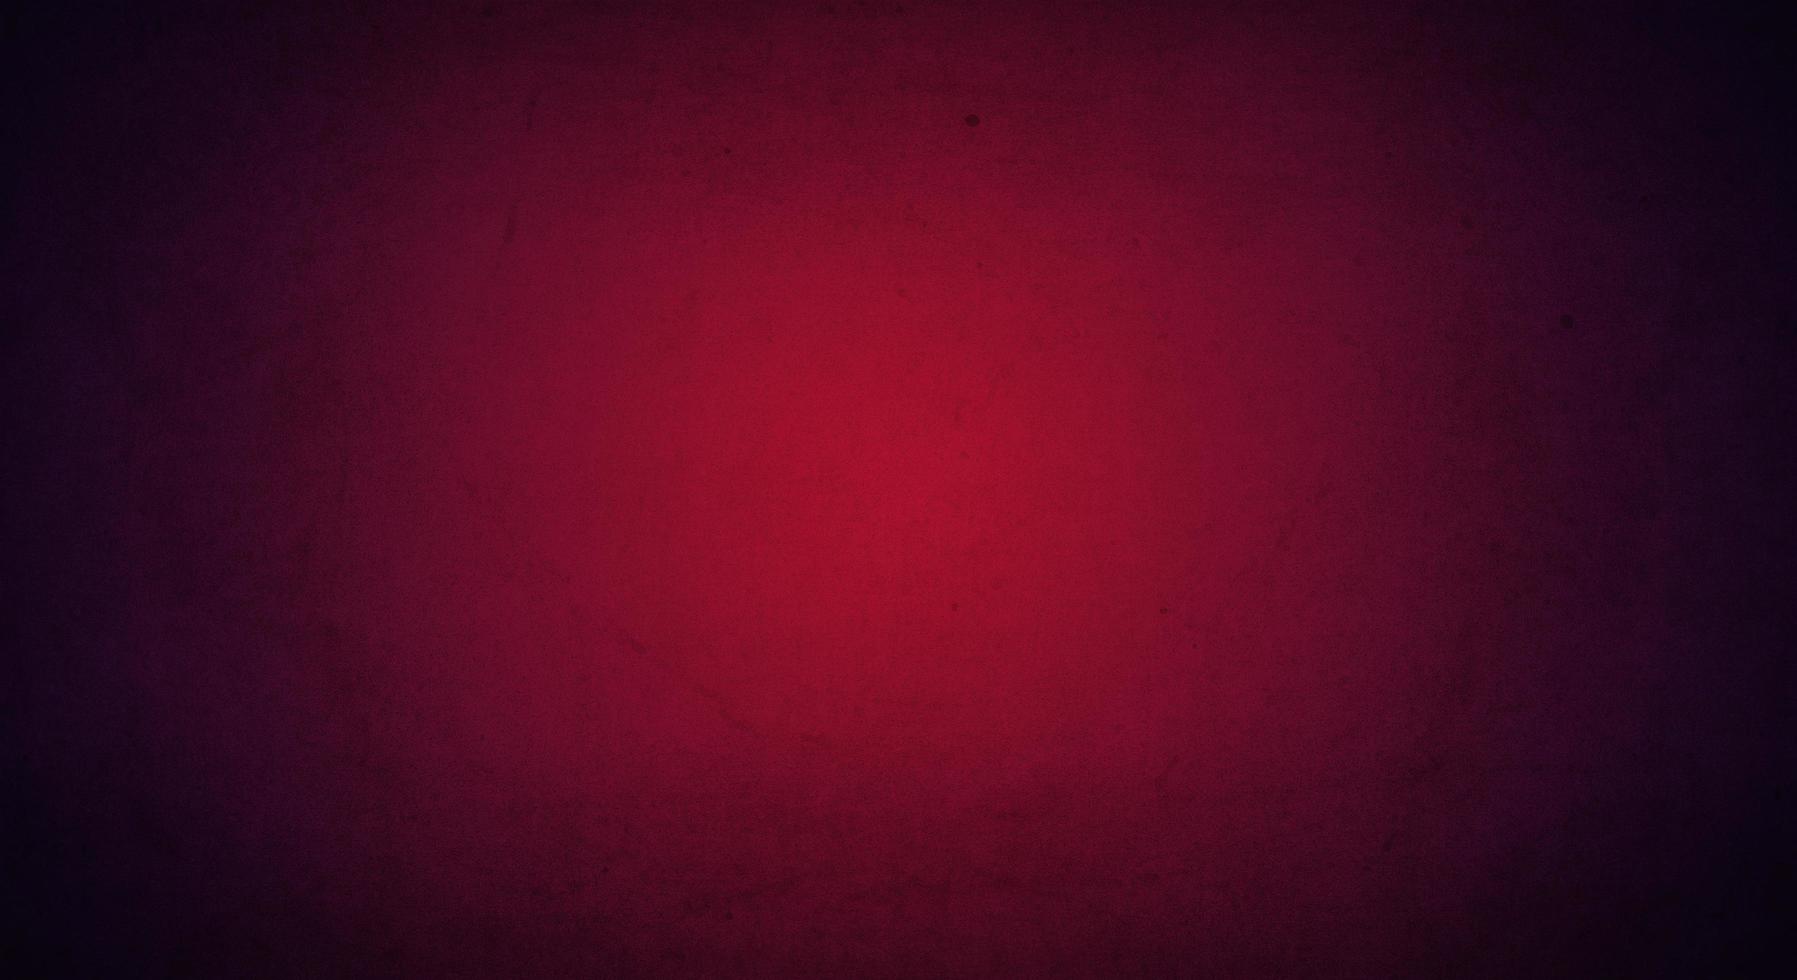 rode paarse grunge achtergrond met zachte lichte en donkere rand, oude vintage achtergrond foto